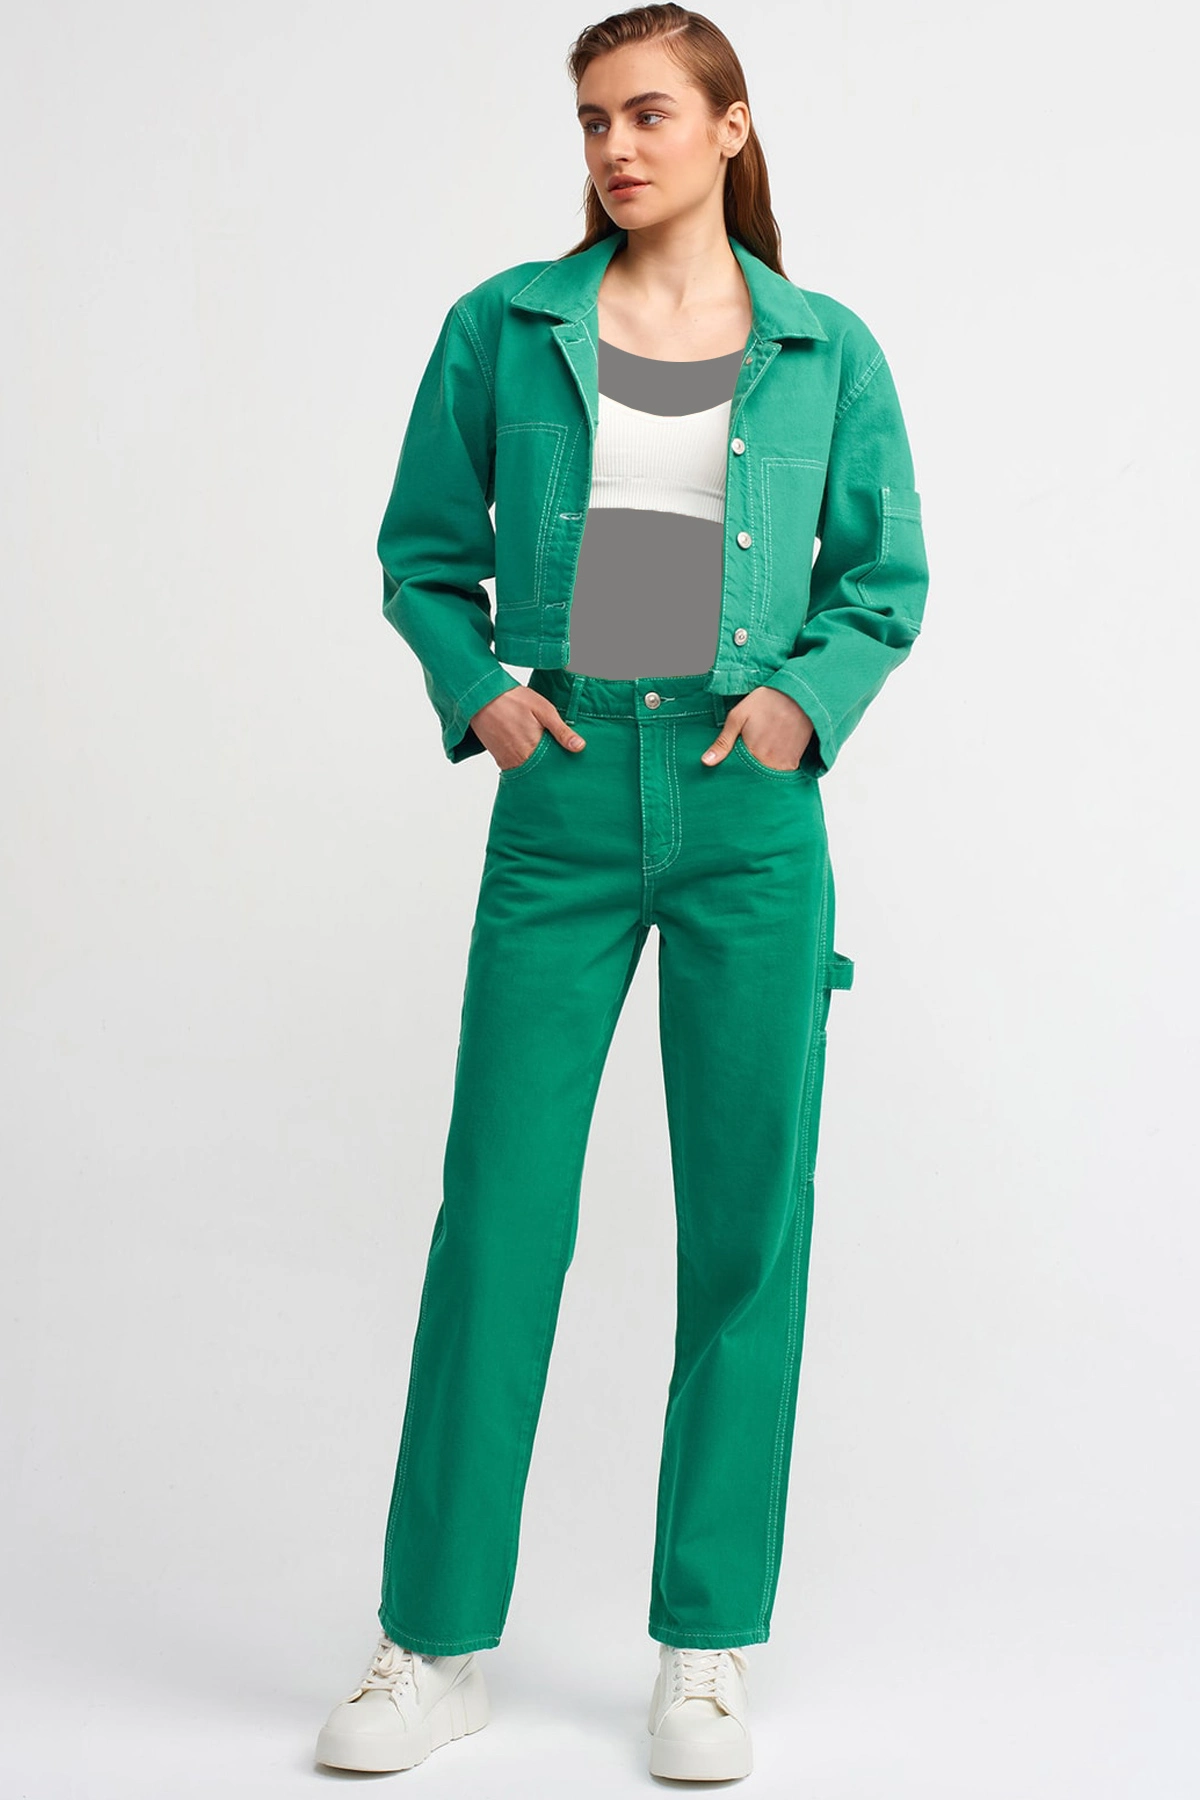 کت کتان کوتاه زنانه سبز برند Dilvin 